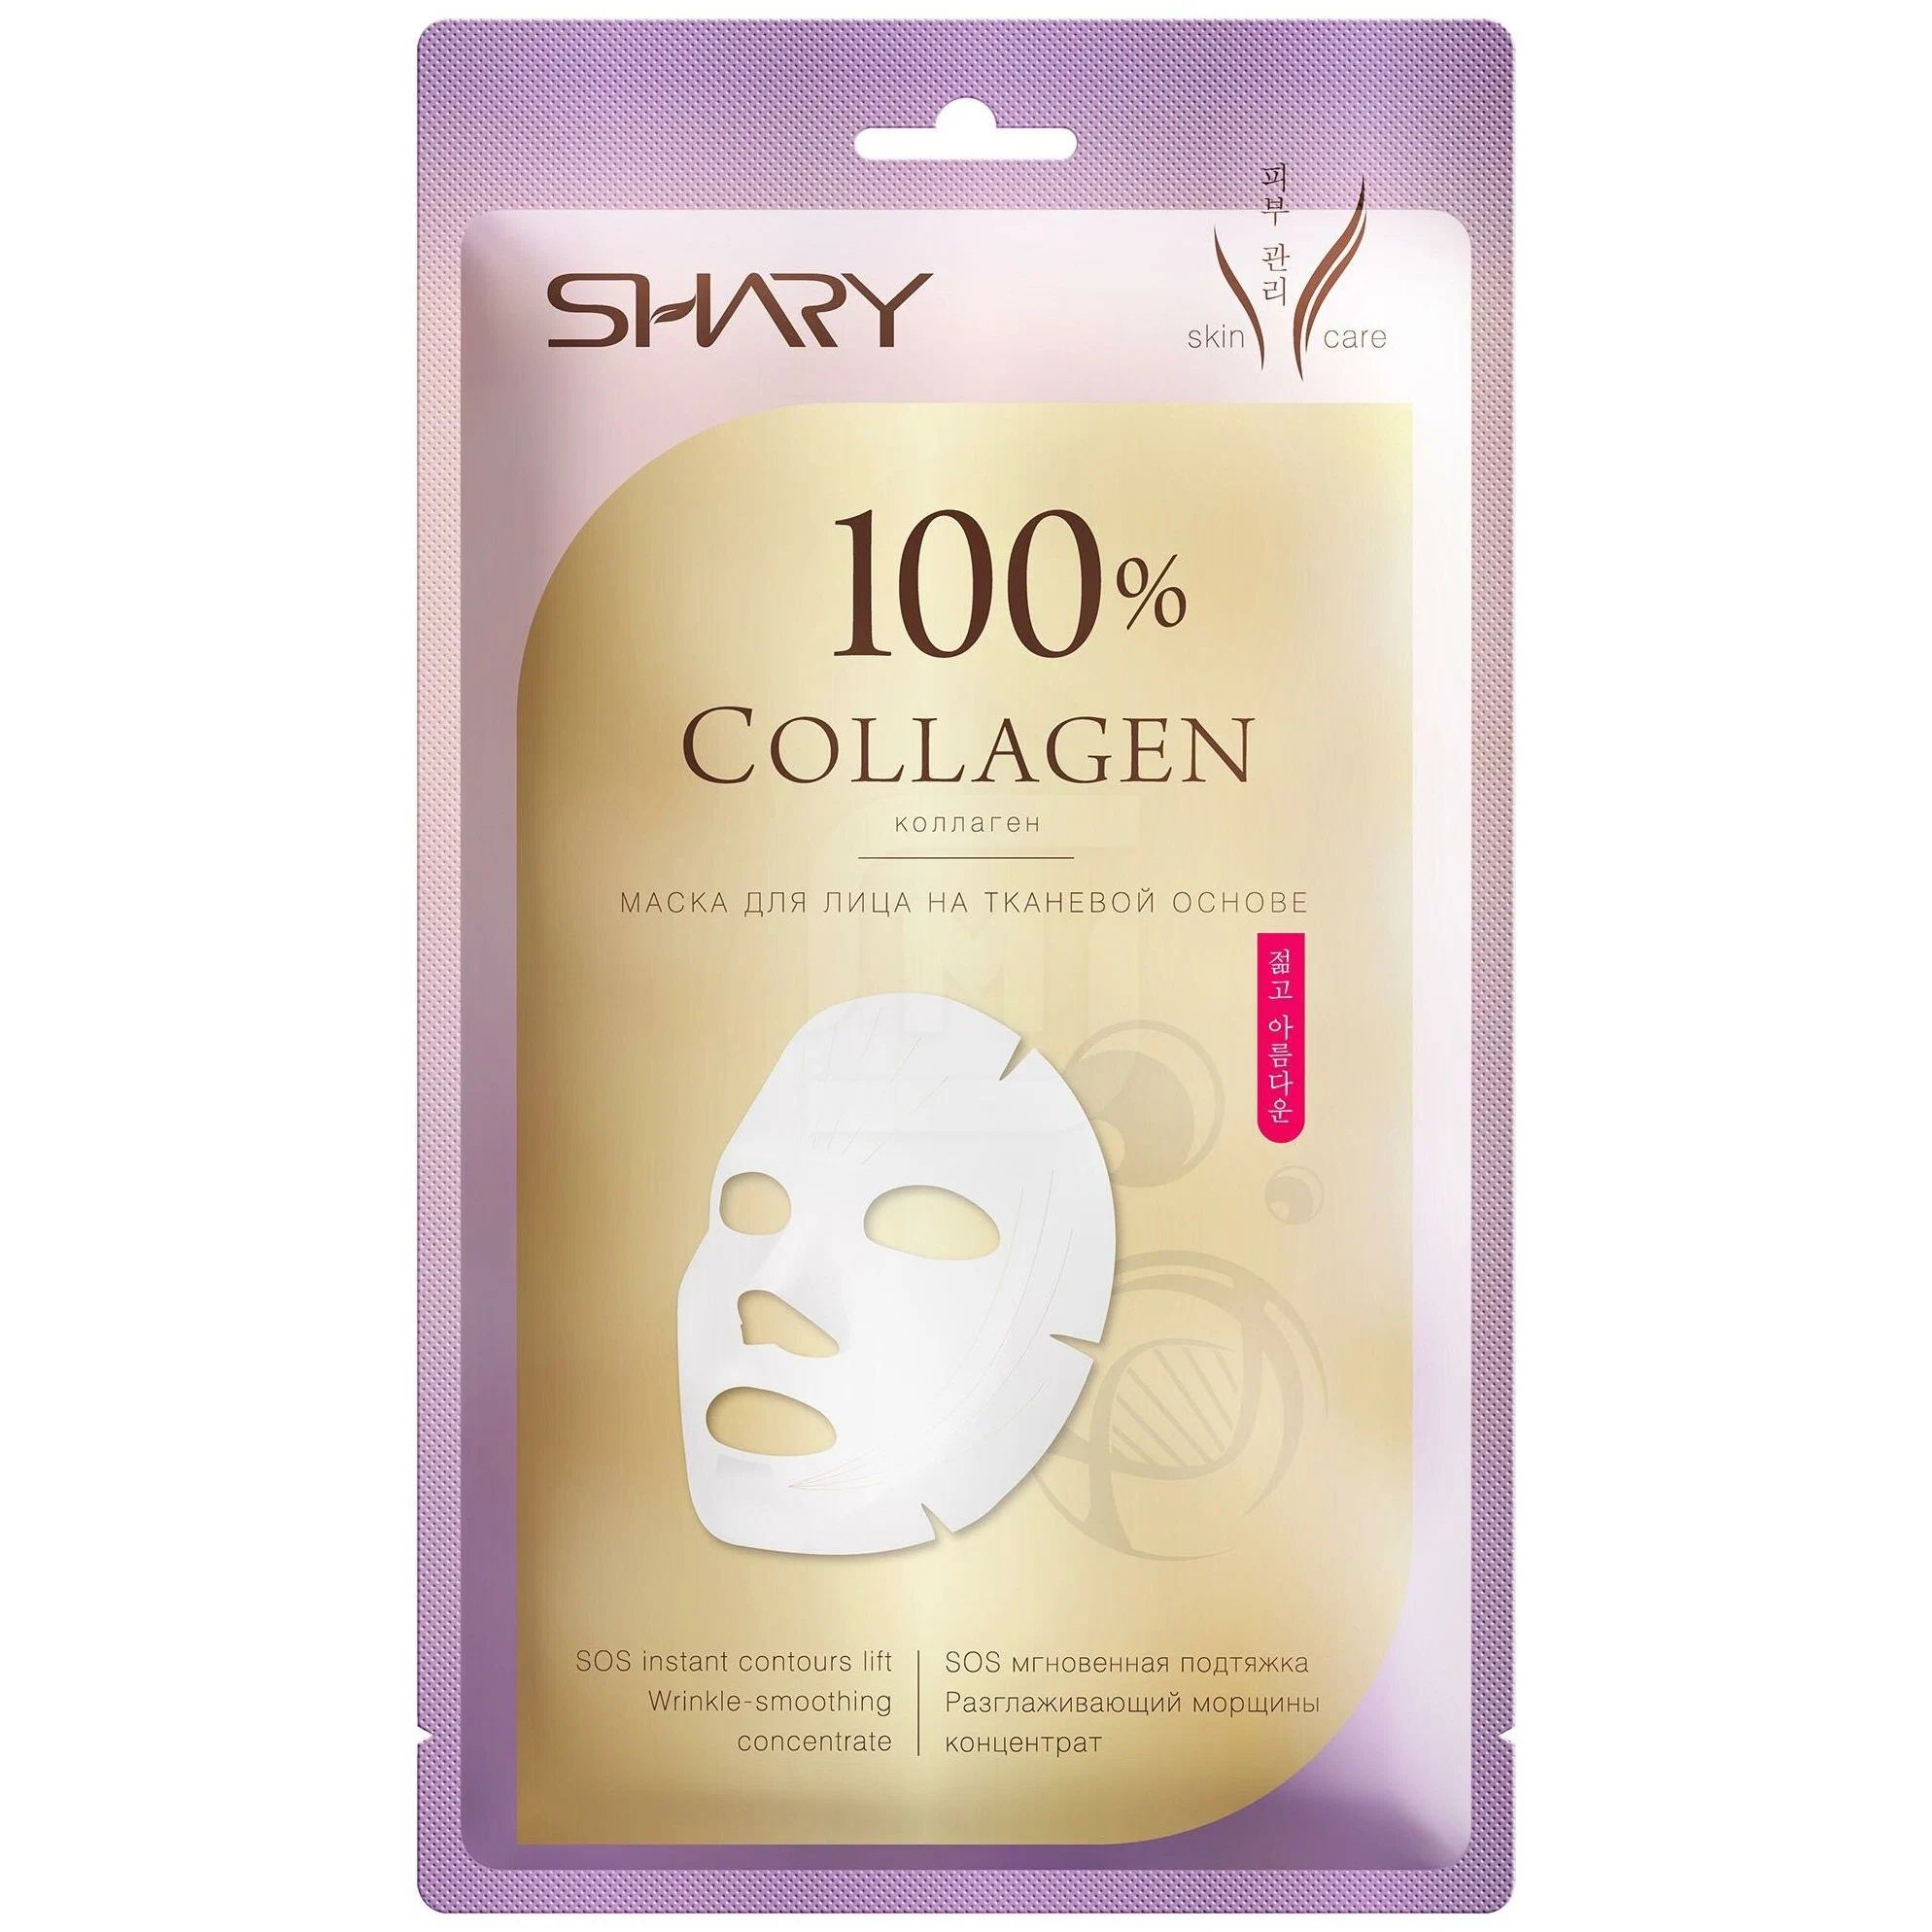 Маска для лица SHARY 100% Коллаген, на тканевой основе, 20 г vichy mineral 89 экспресс маска на тканевой основе mineral 89 29 г